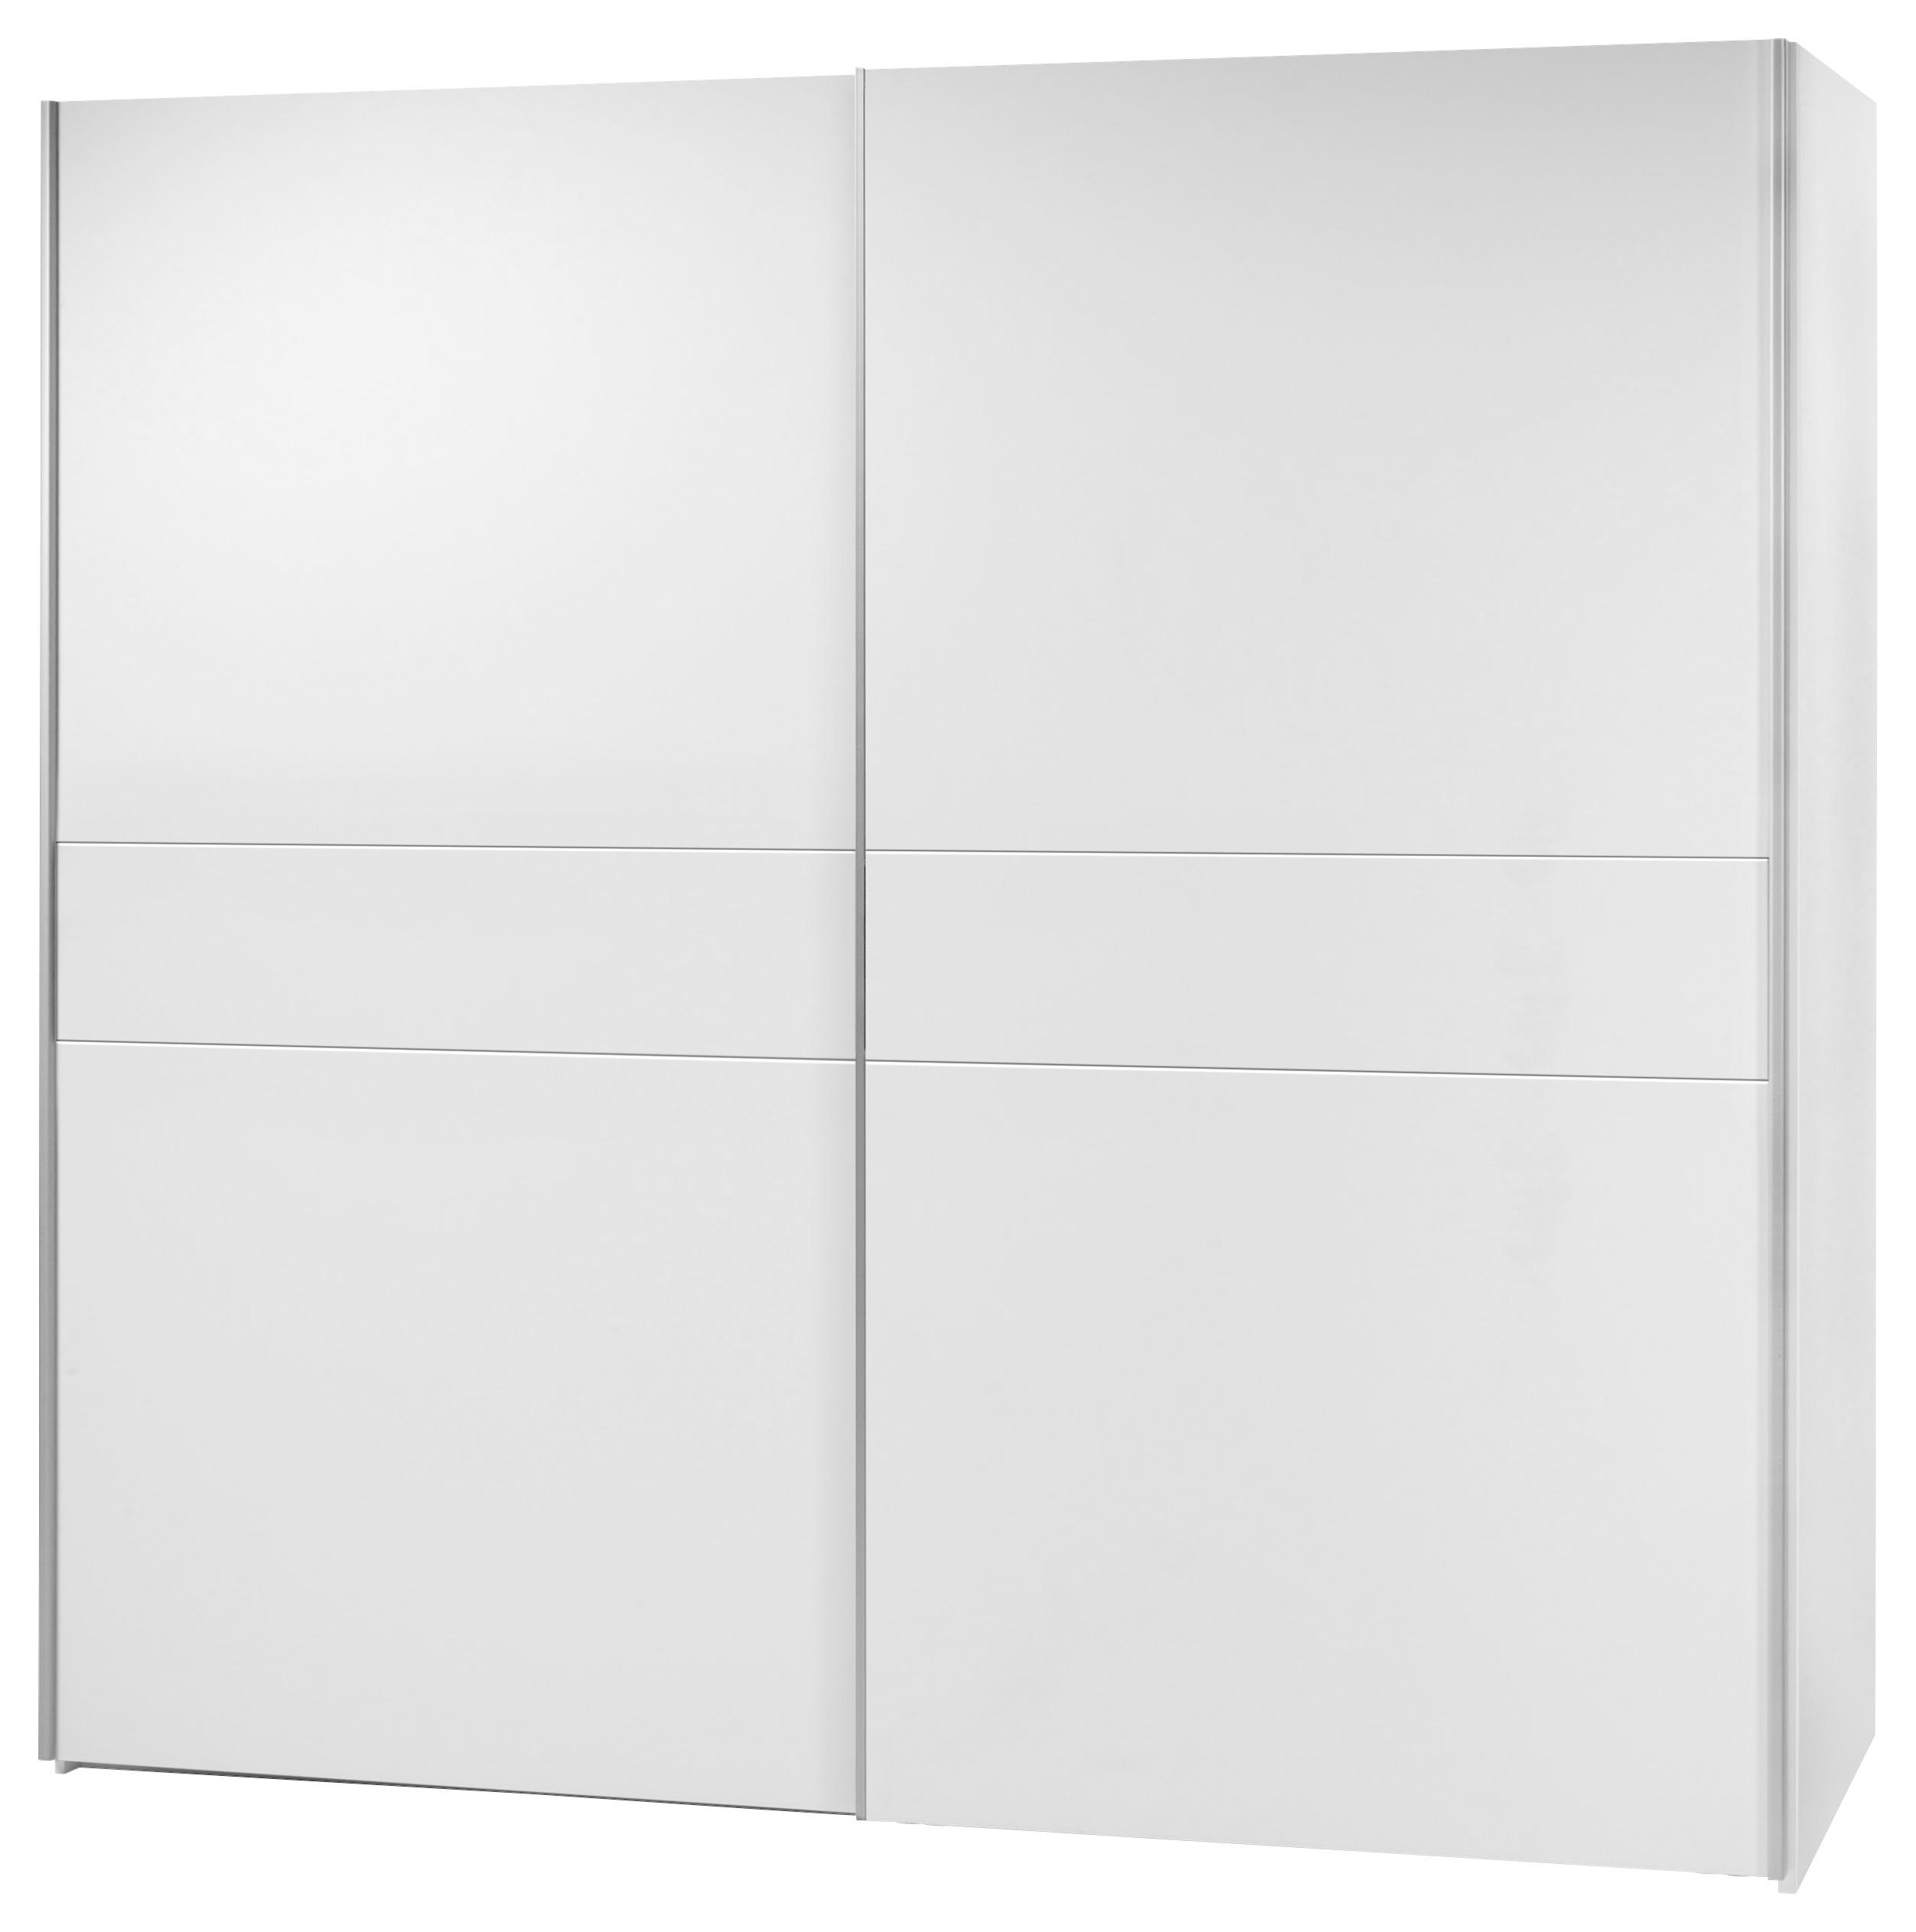 Skříň S Posuvnými Dveřmi Poly 4 - bílá/barvy hliníku, Moderní, kov/kompozitní dřevo (215/210/58cm)